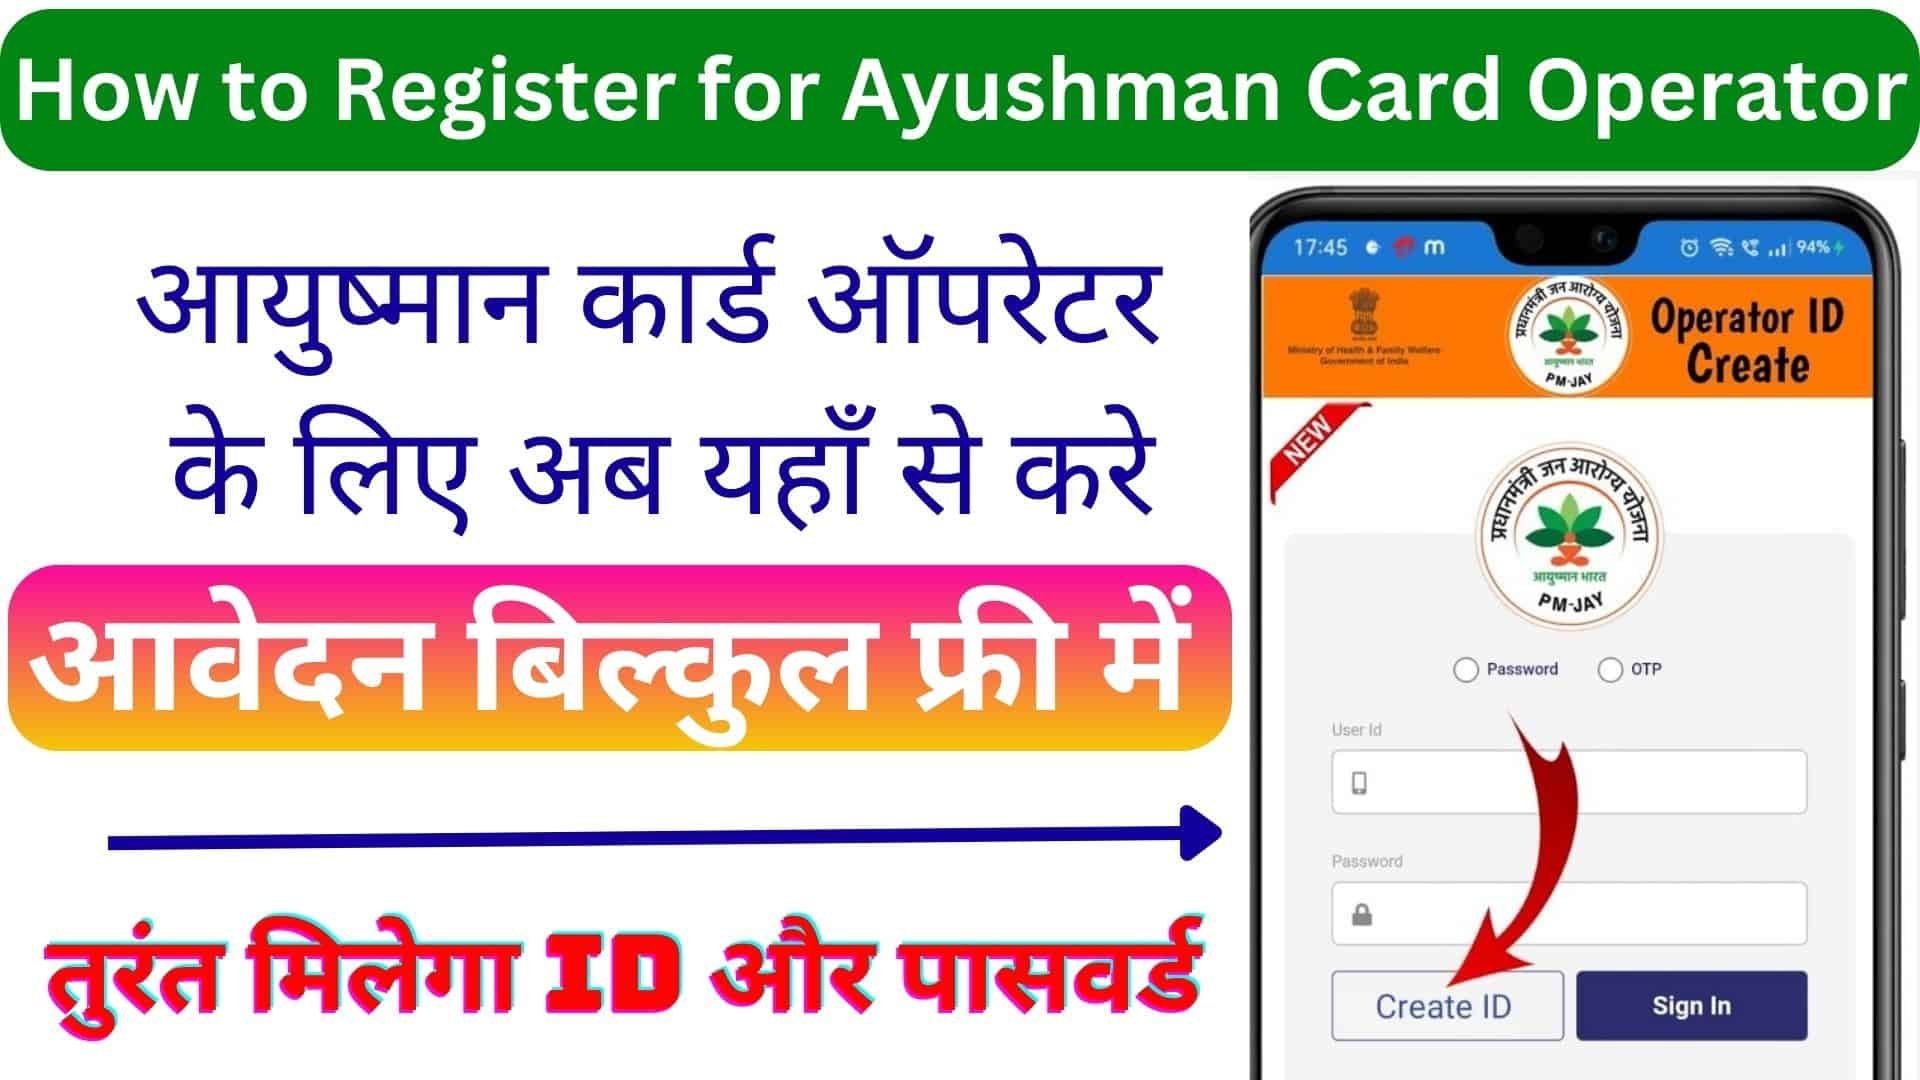 How to Register for Ayushman Card Operator : आयुष्मान कार्ड ऑपरेटर के लिए अब यहाँ से करे आवेदन बिल्कुल फ्री में तुरंत मिलेगी ID और पासवर्ड